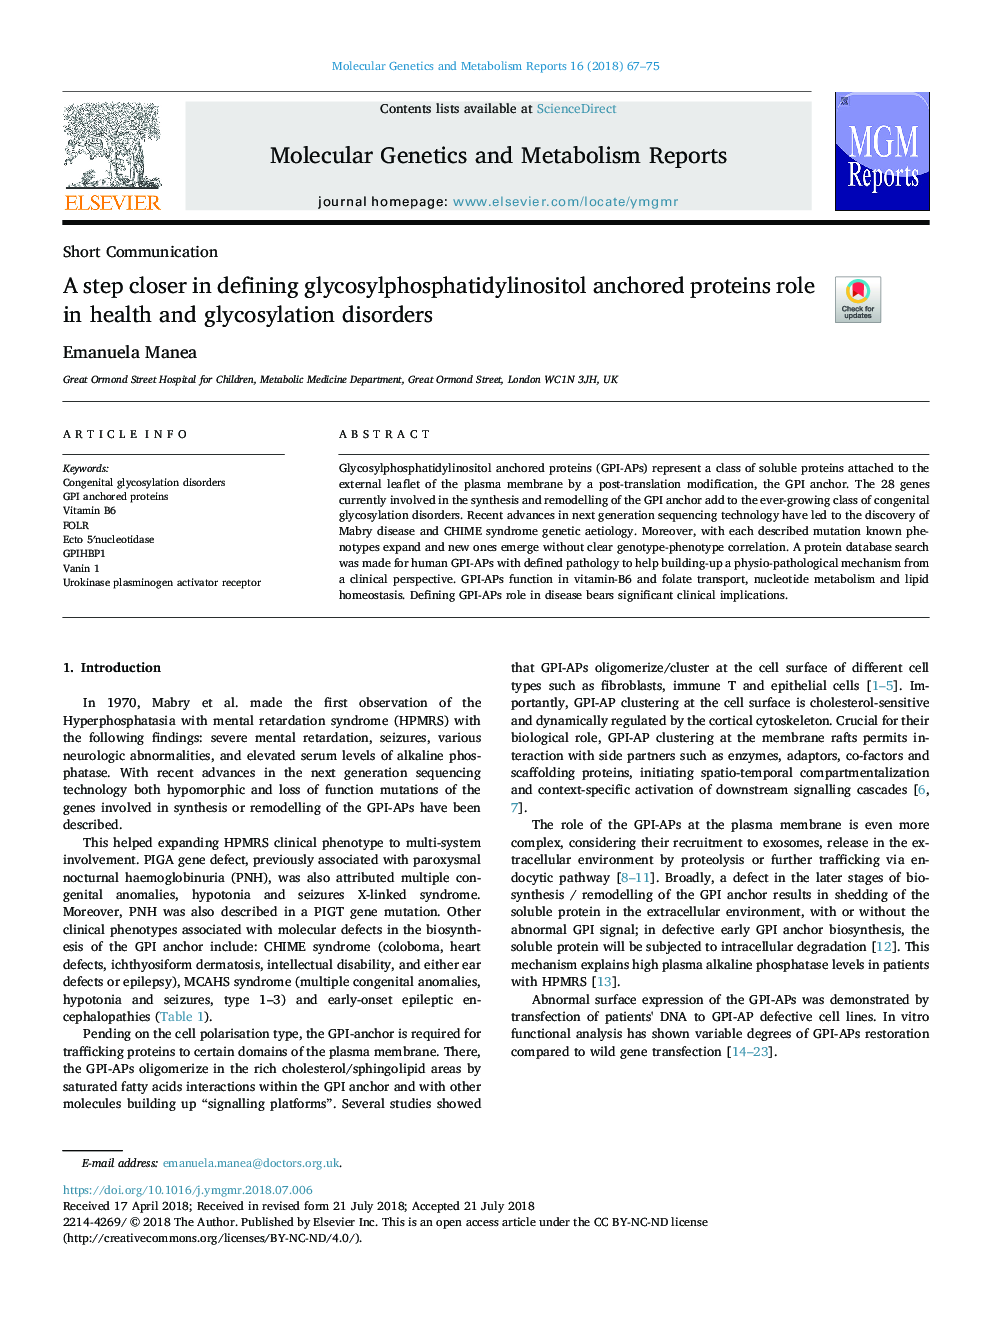 یک گام در تعریف نقش پروتئین پایدار گلیکوزیل فسفات فسفاتیدیلوستیتول در اختلالات سلامتی و گلیکوزیلات 